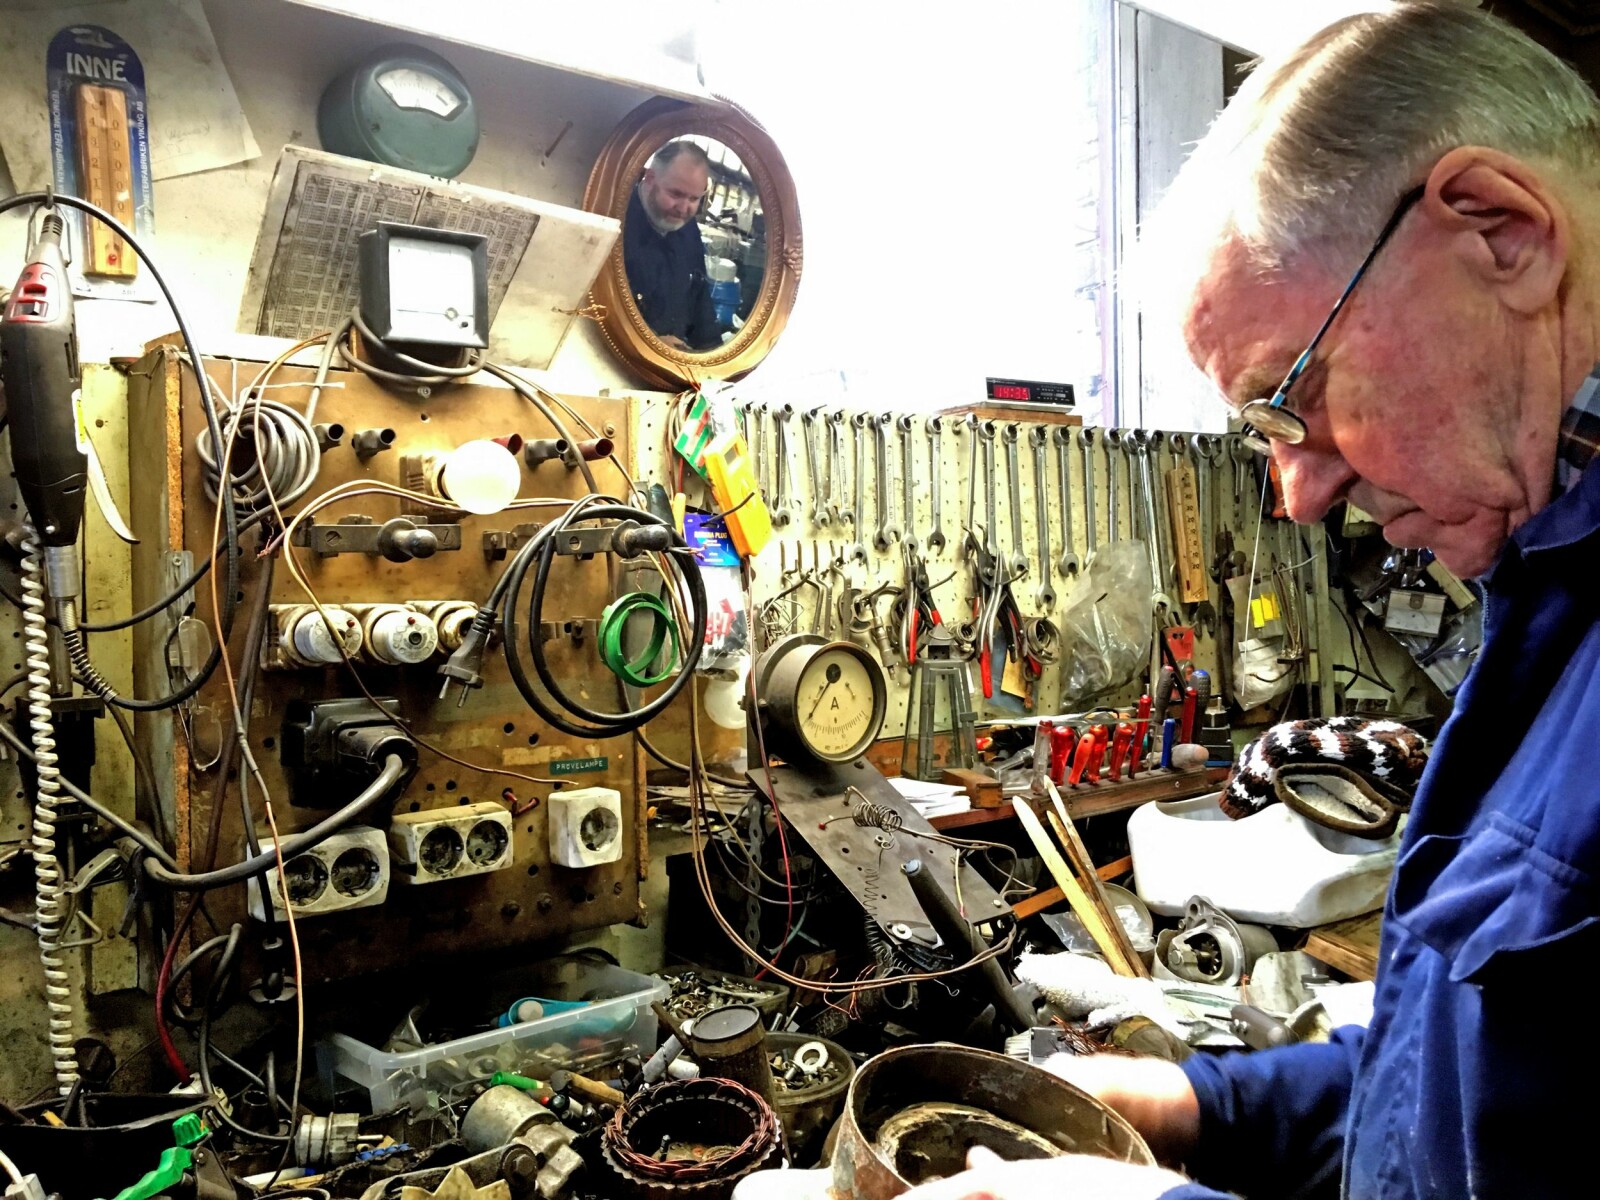 <b>VERKSTED:</b> Ved Fredrikstad Vikleverksted reparerer de alt innen mekaniske maskiner. – Det meste kan repareres, sier Arild som har reparert alt mulig siden 1948.